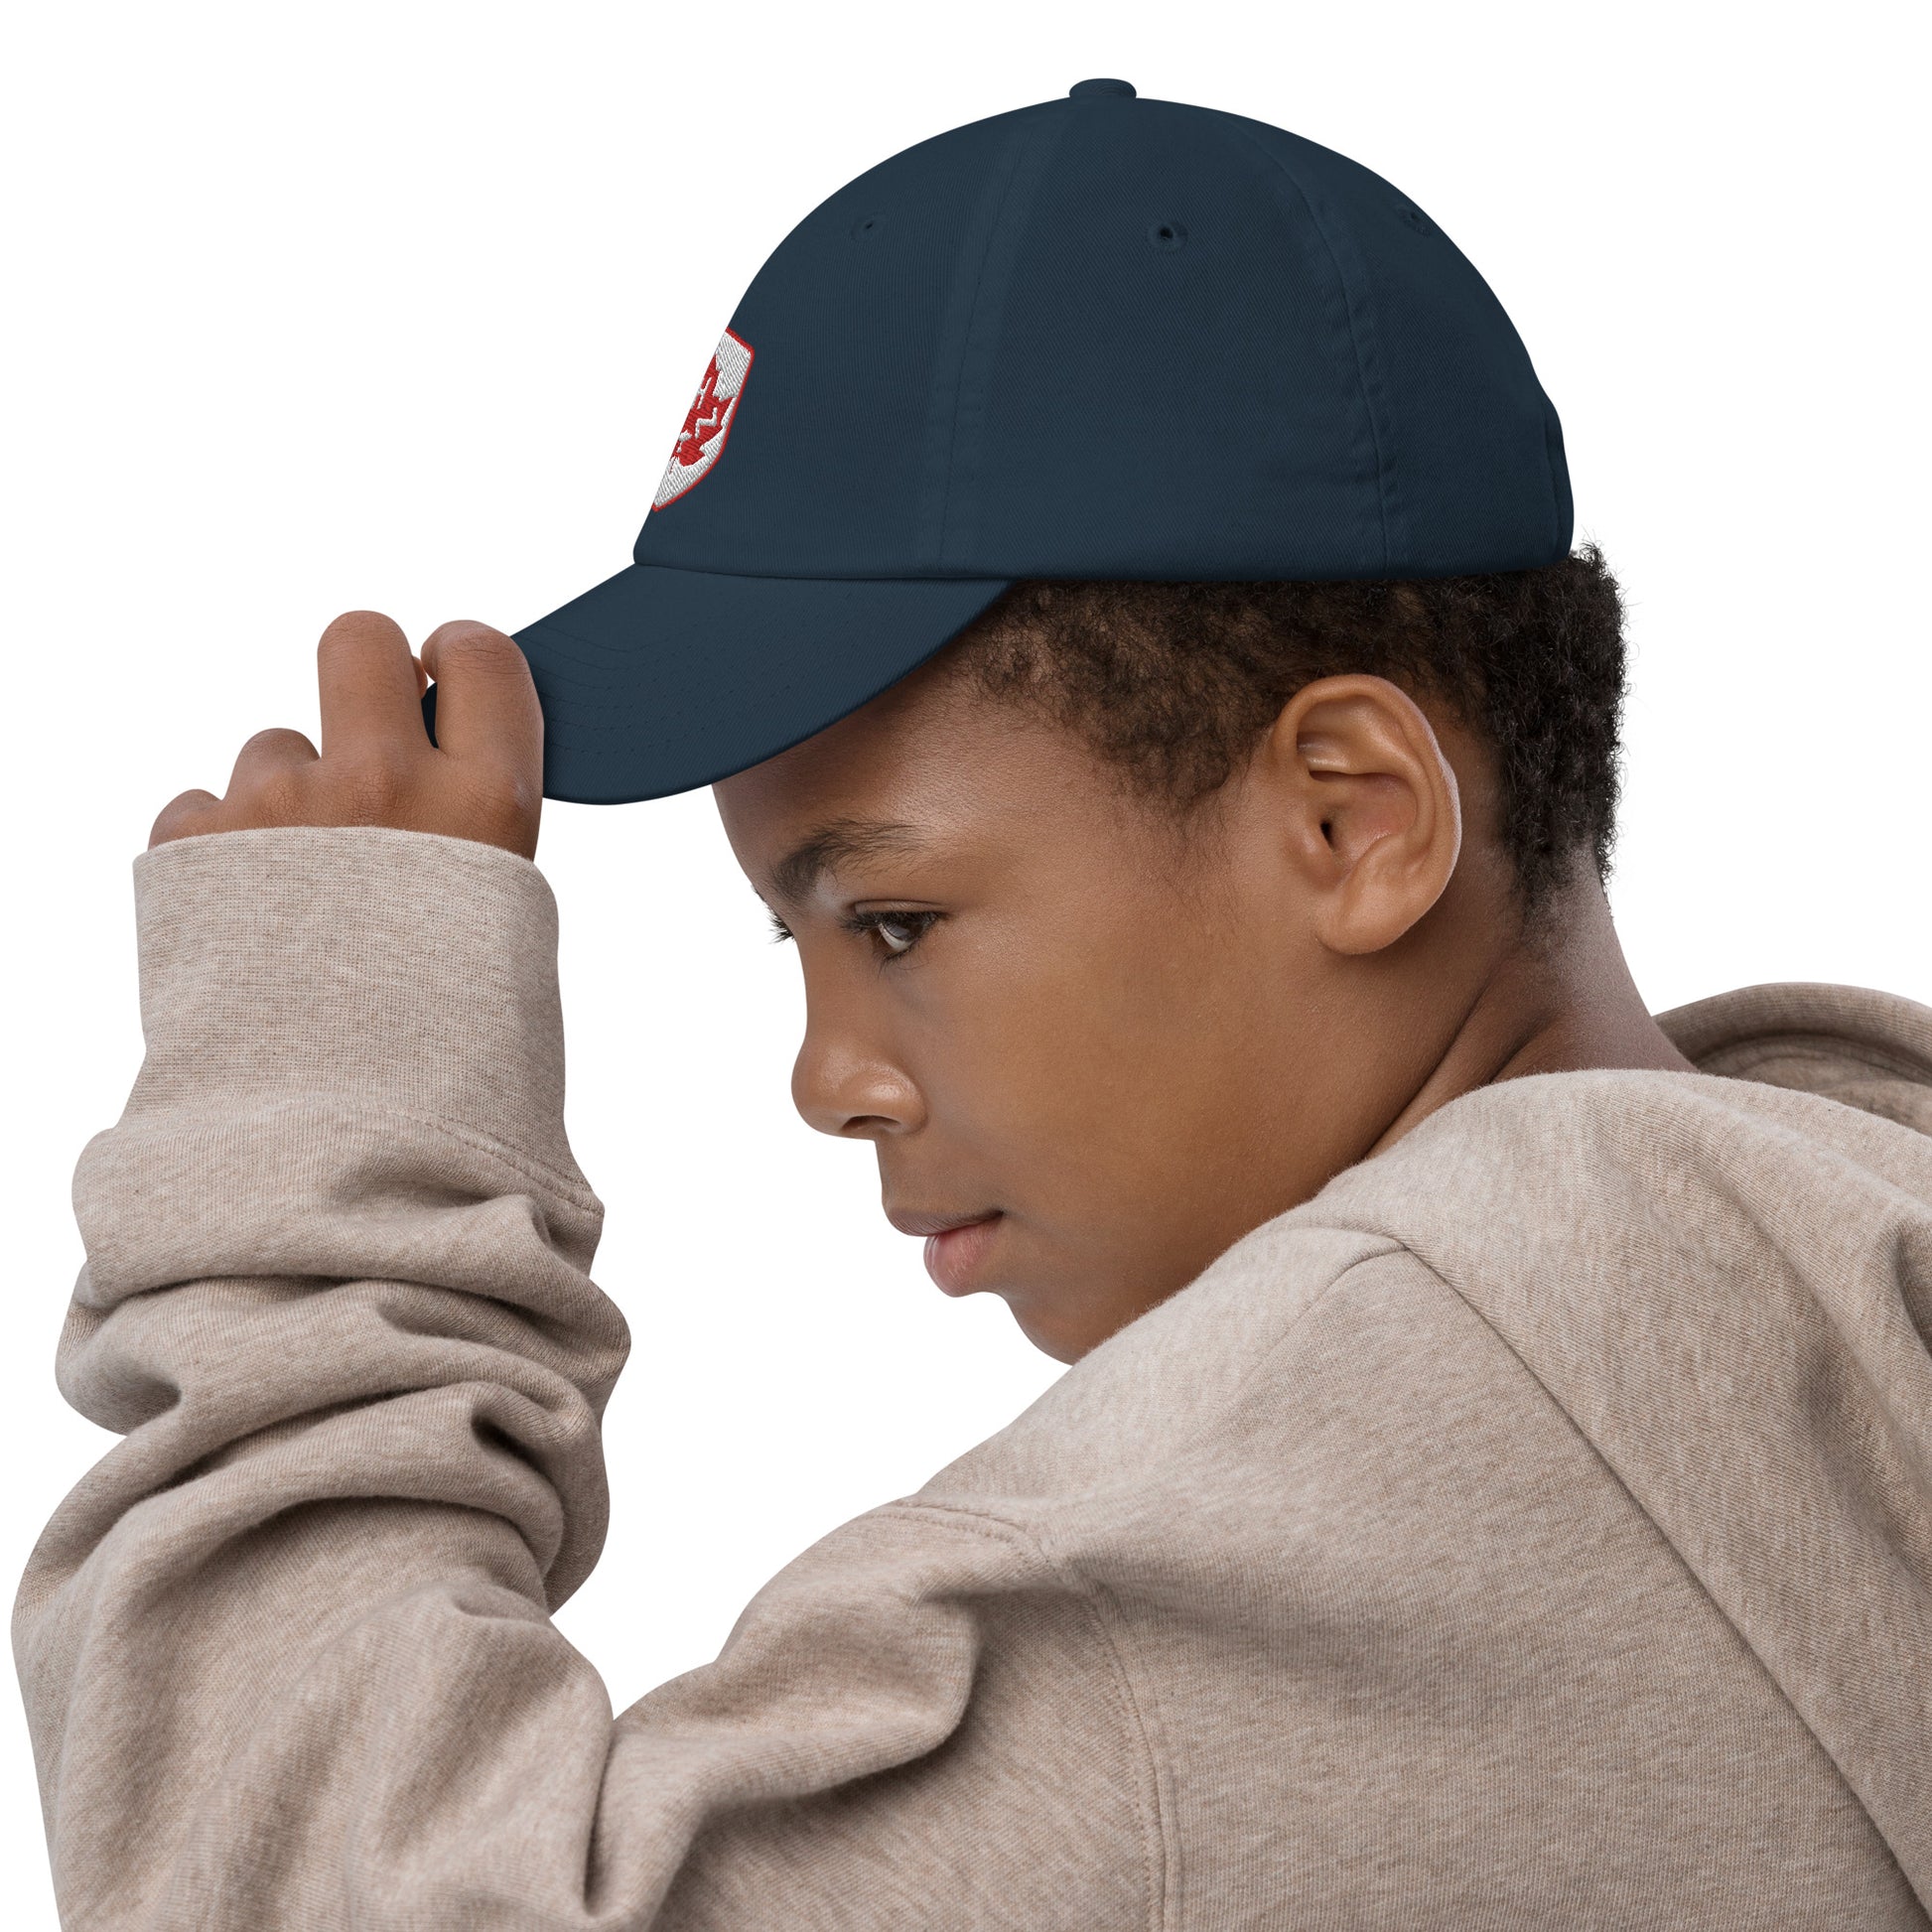 Maple Leaf Kid's Cap - Red/White • YHZ Halifax • YHM Designs - Image 09